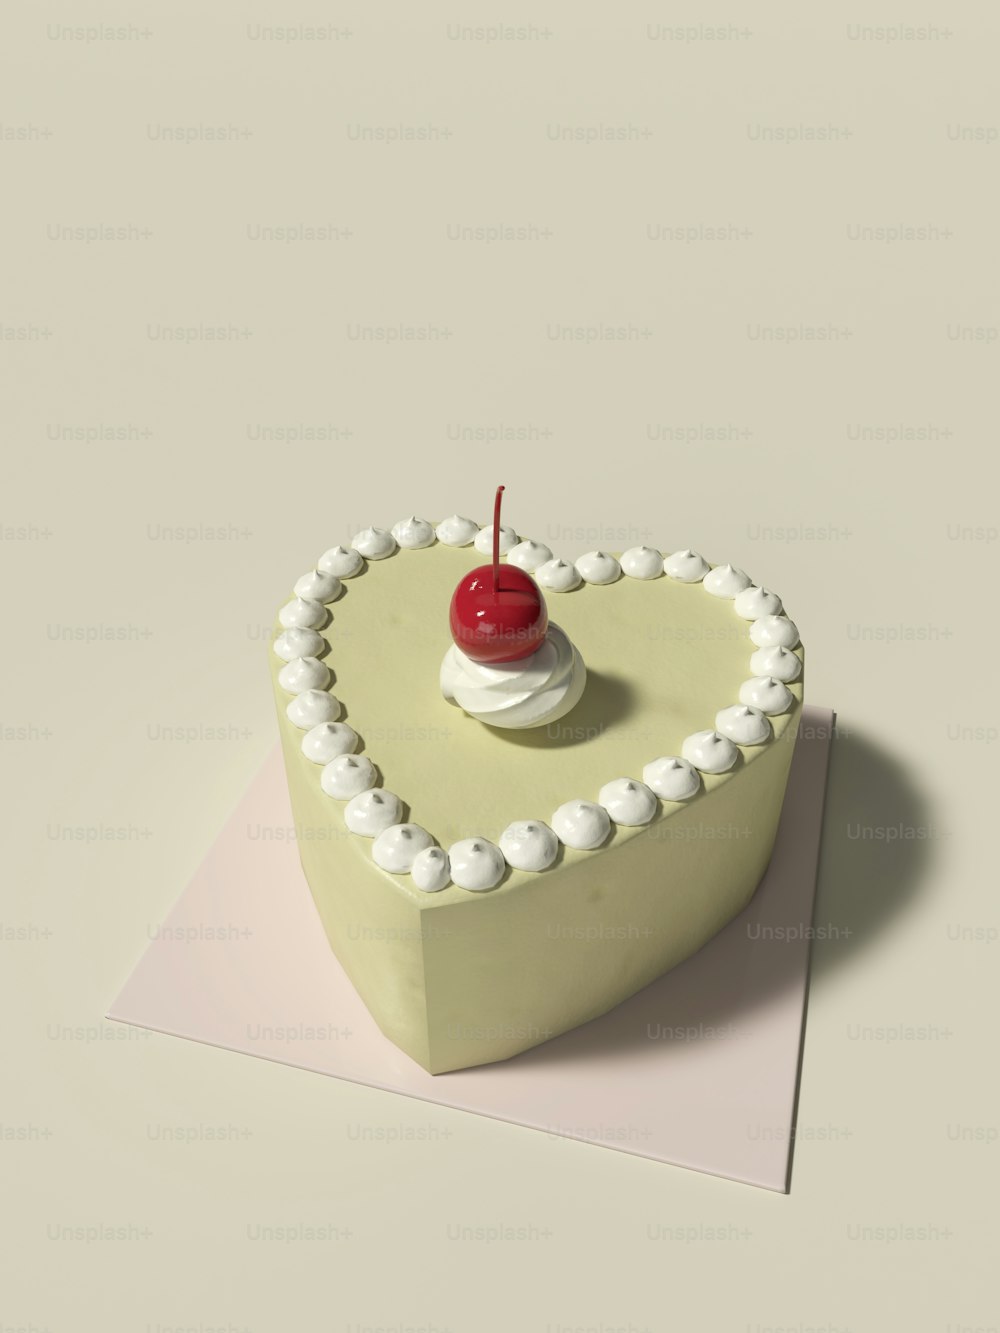 Un gâteau en forme de cœur avec une cerise sur le dessus